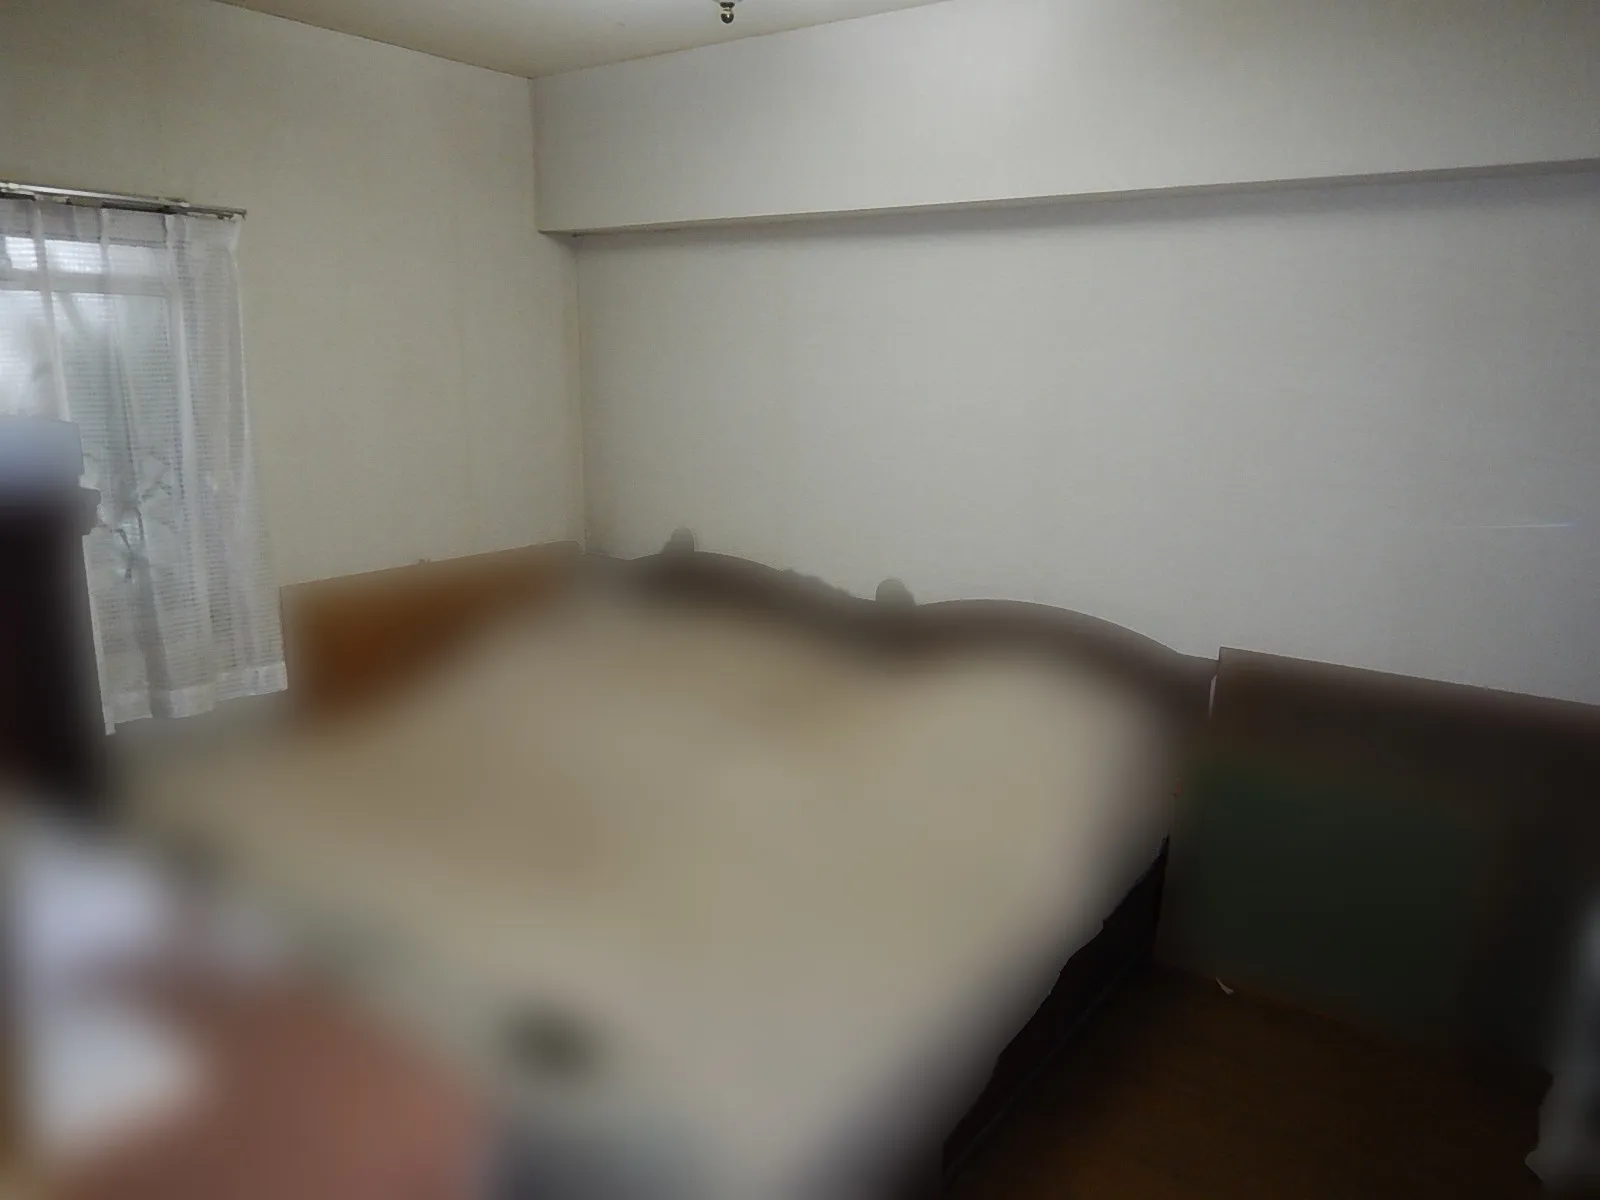 【埼玉県さいたま市】北側洋室のカビ臭い寝室